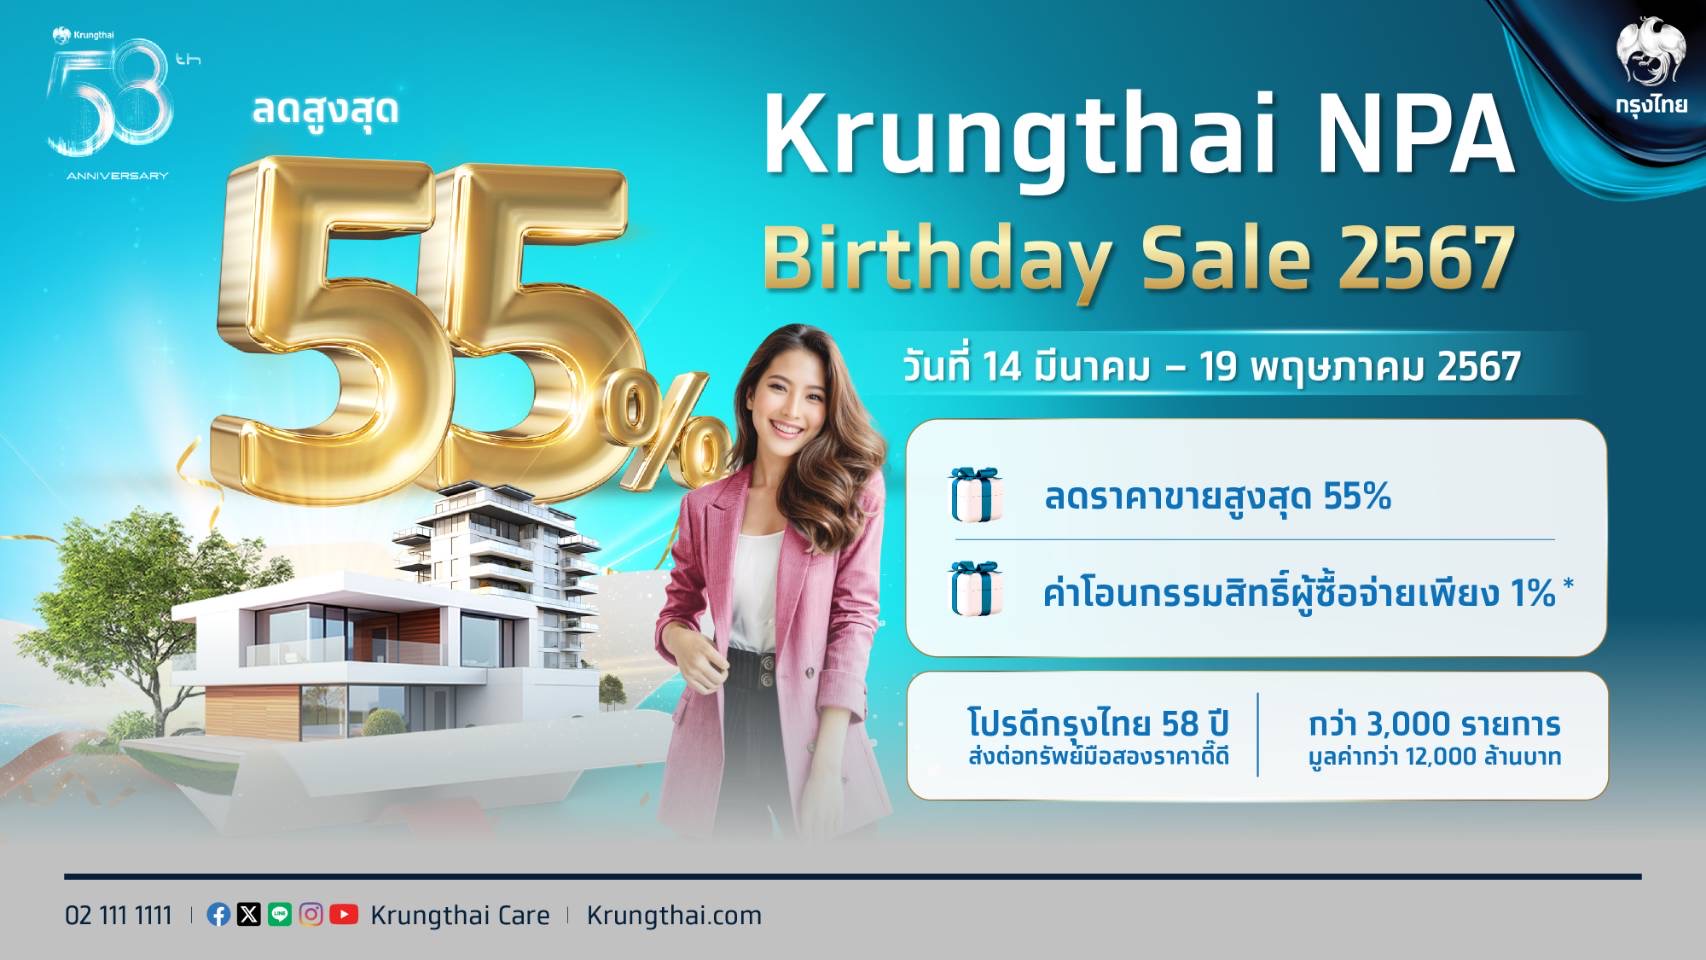 กรุงไทย 58 ปี จัดใหญ่ NPA Birthday Sale คัด คุ้ม ครบ ทรัพย์มือสองคุณภาพดี ทำเลเด่นกว่า    3,000 รายการ ลดสูงสุด 55%